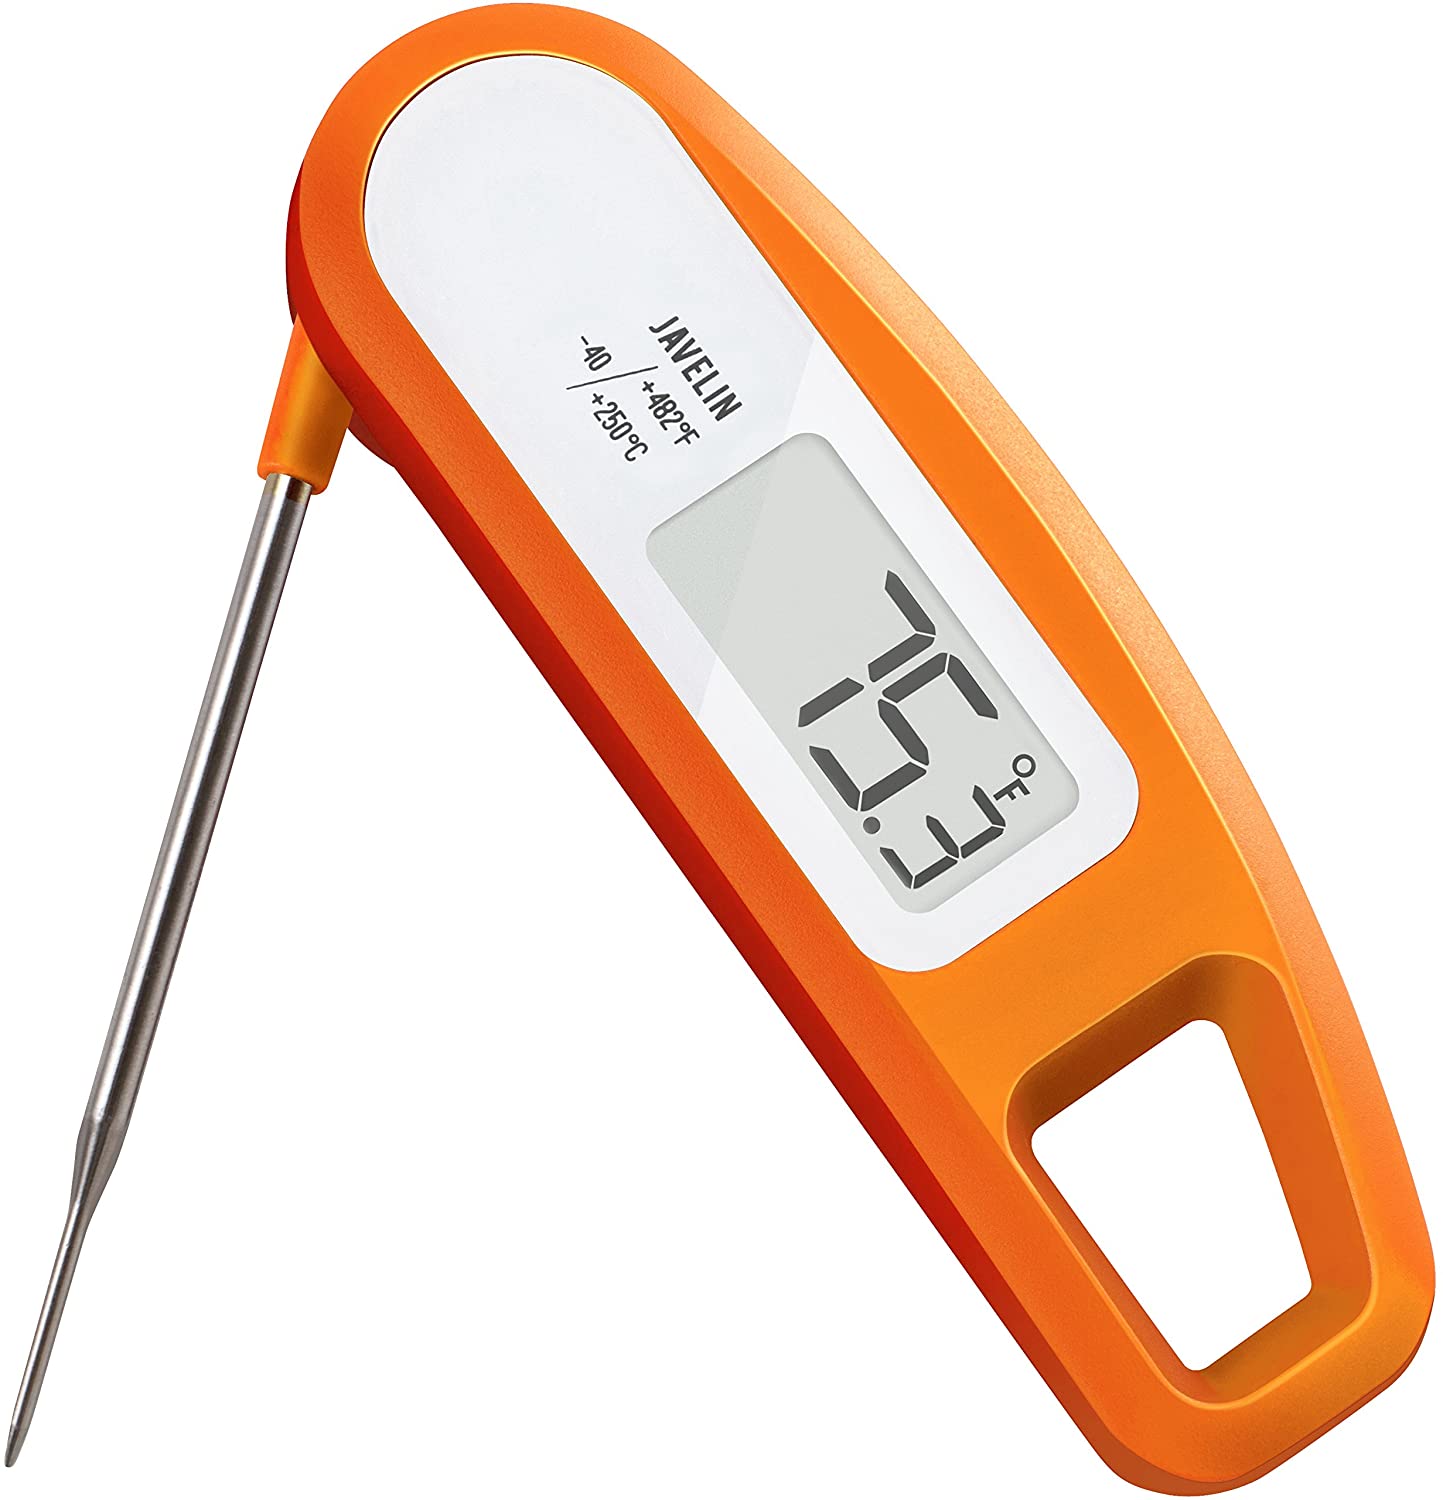 Lavatools PT12 Javelin Digital Instant Read Meat Thermometer (Orange)